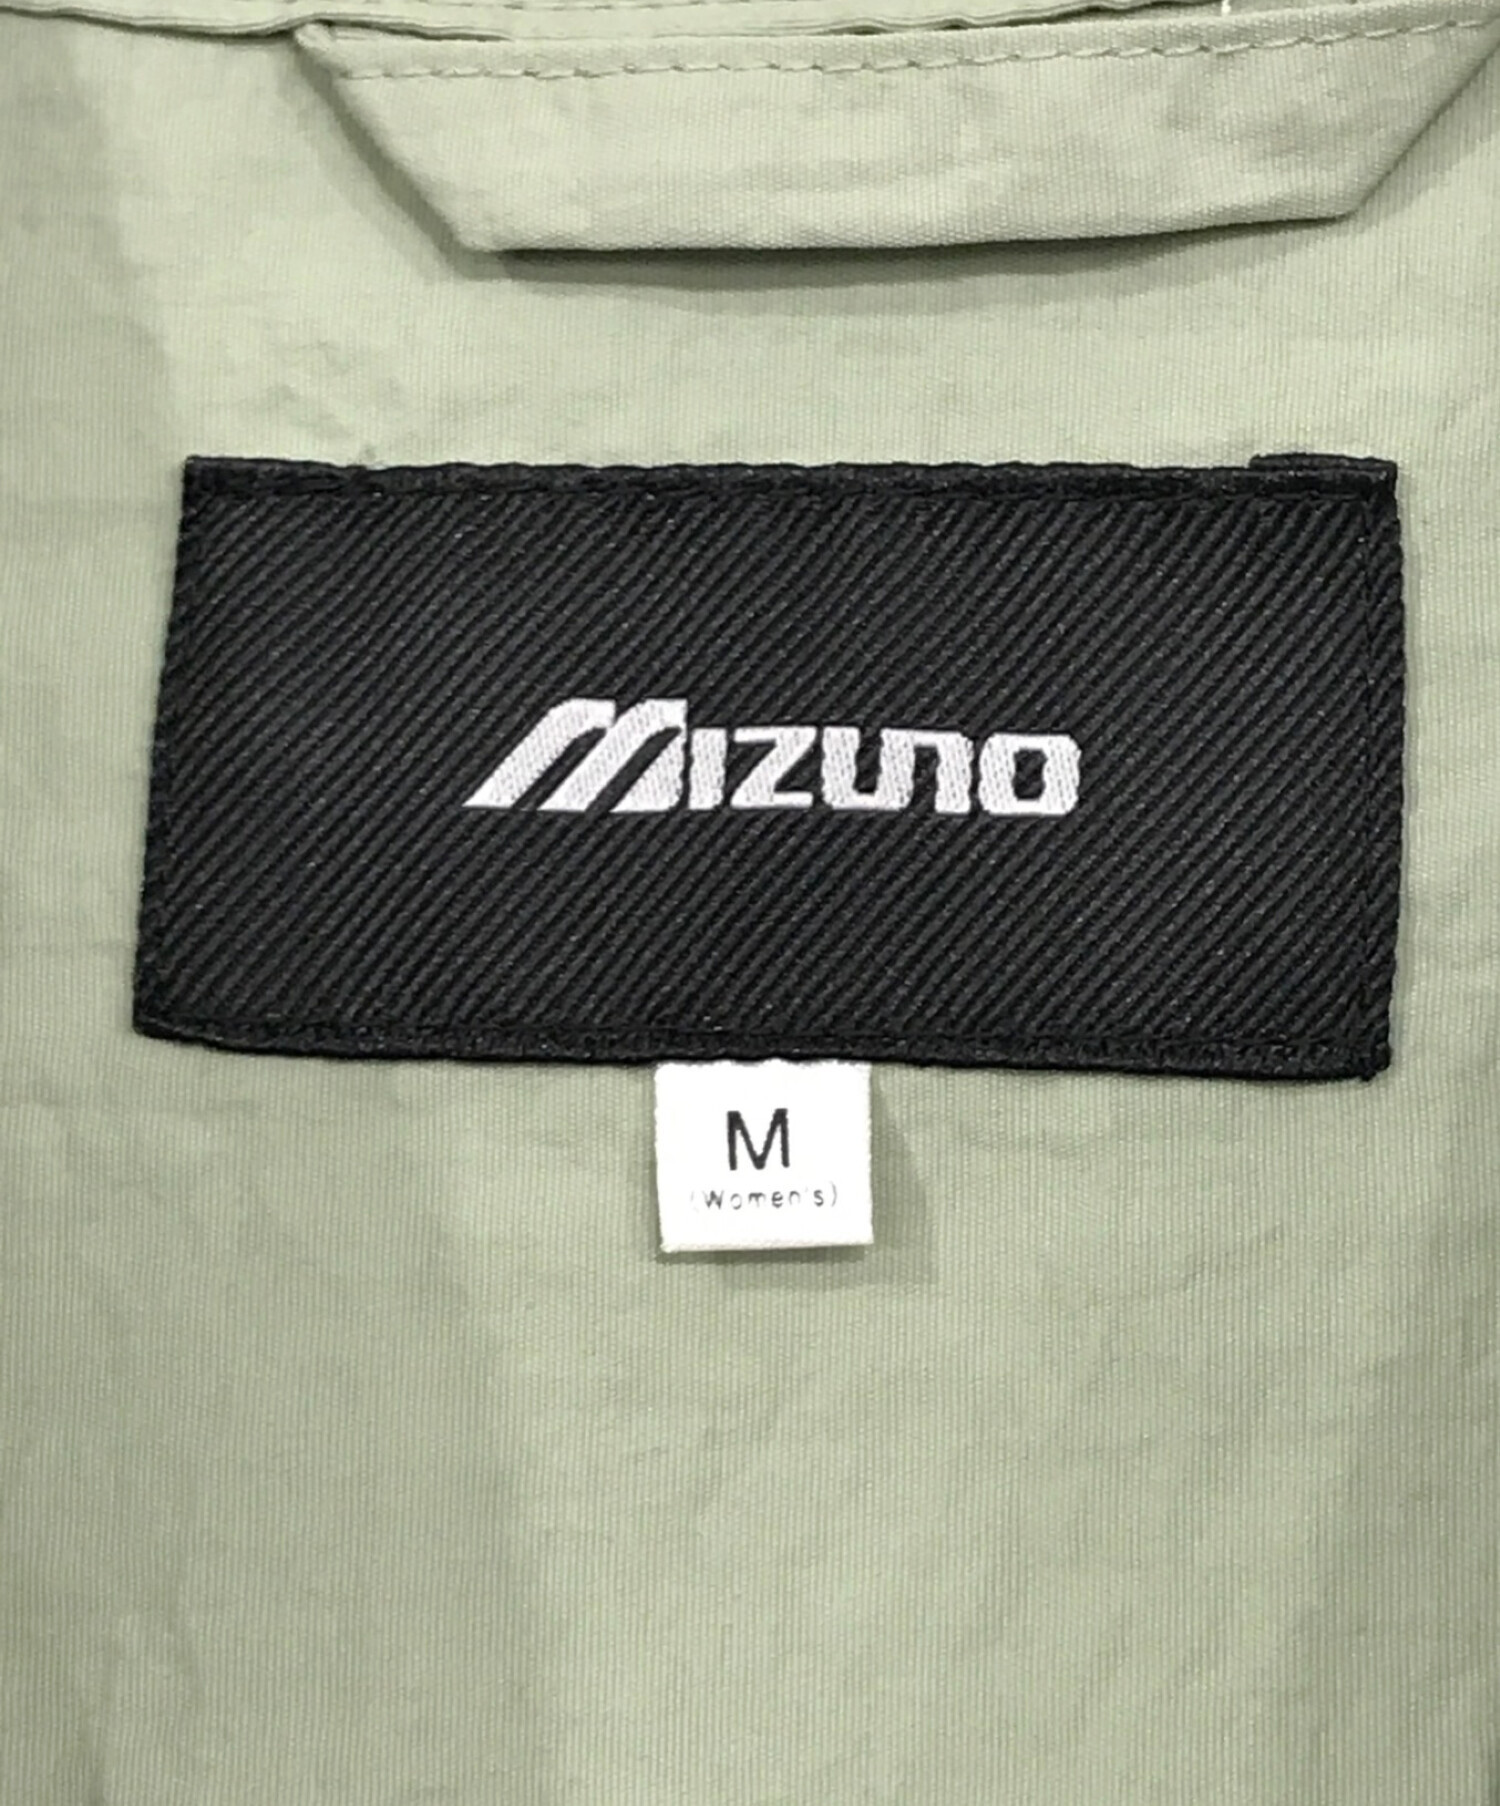 MIZUNO (ミズノ) ウォーターリパレントワンピース グリーン サイズ:SIZE M